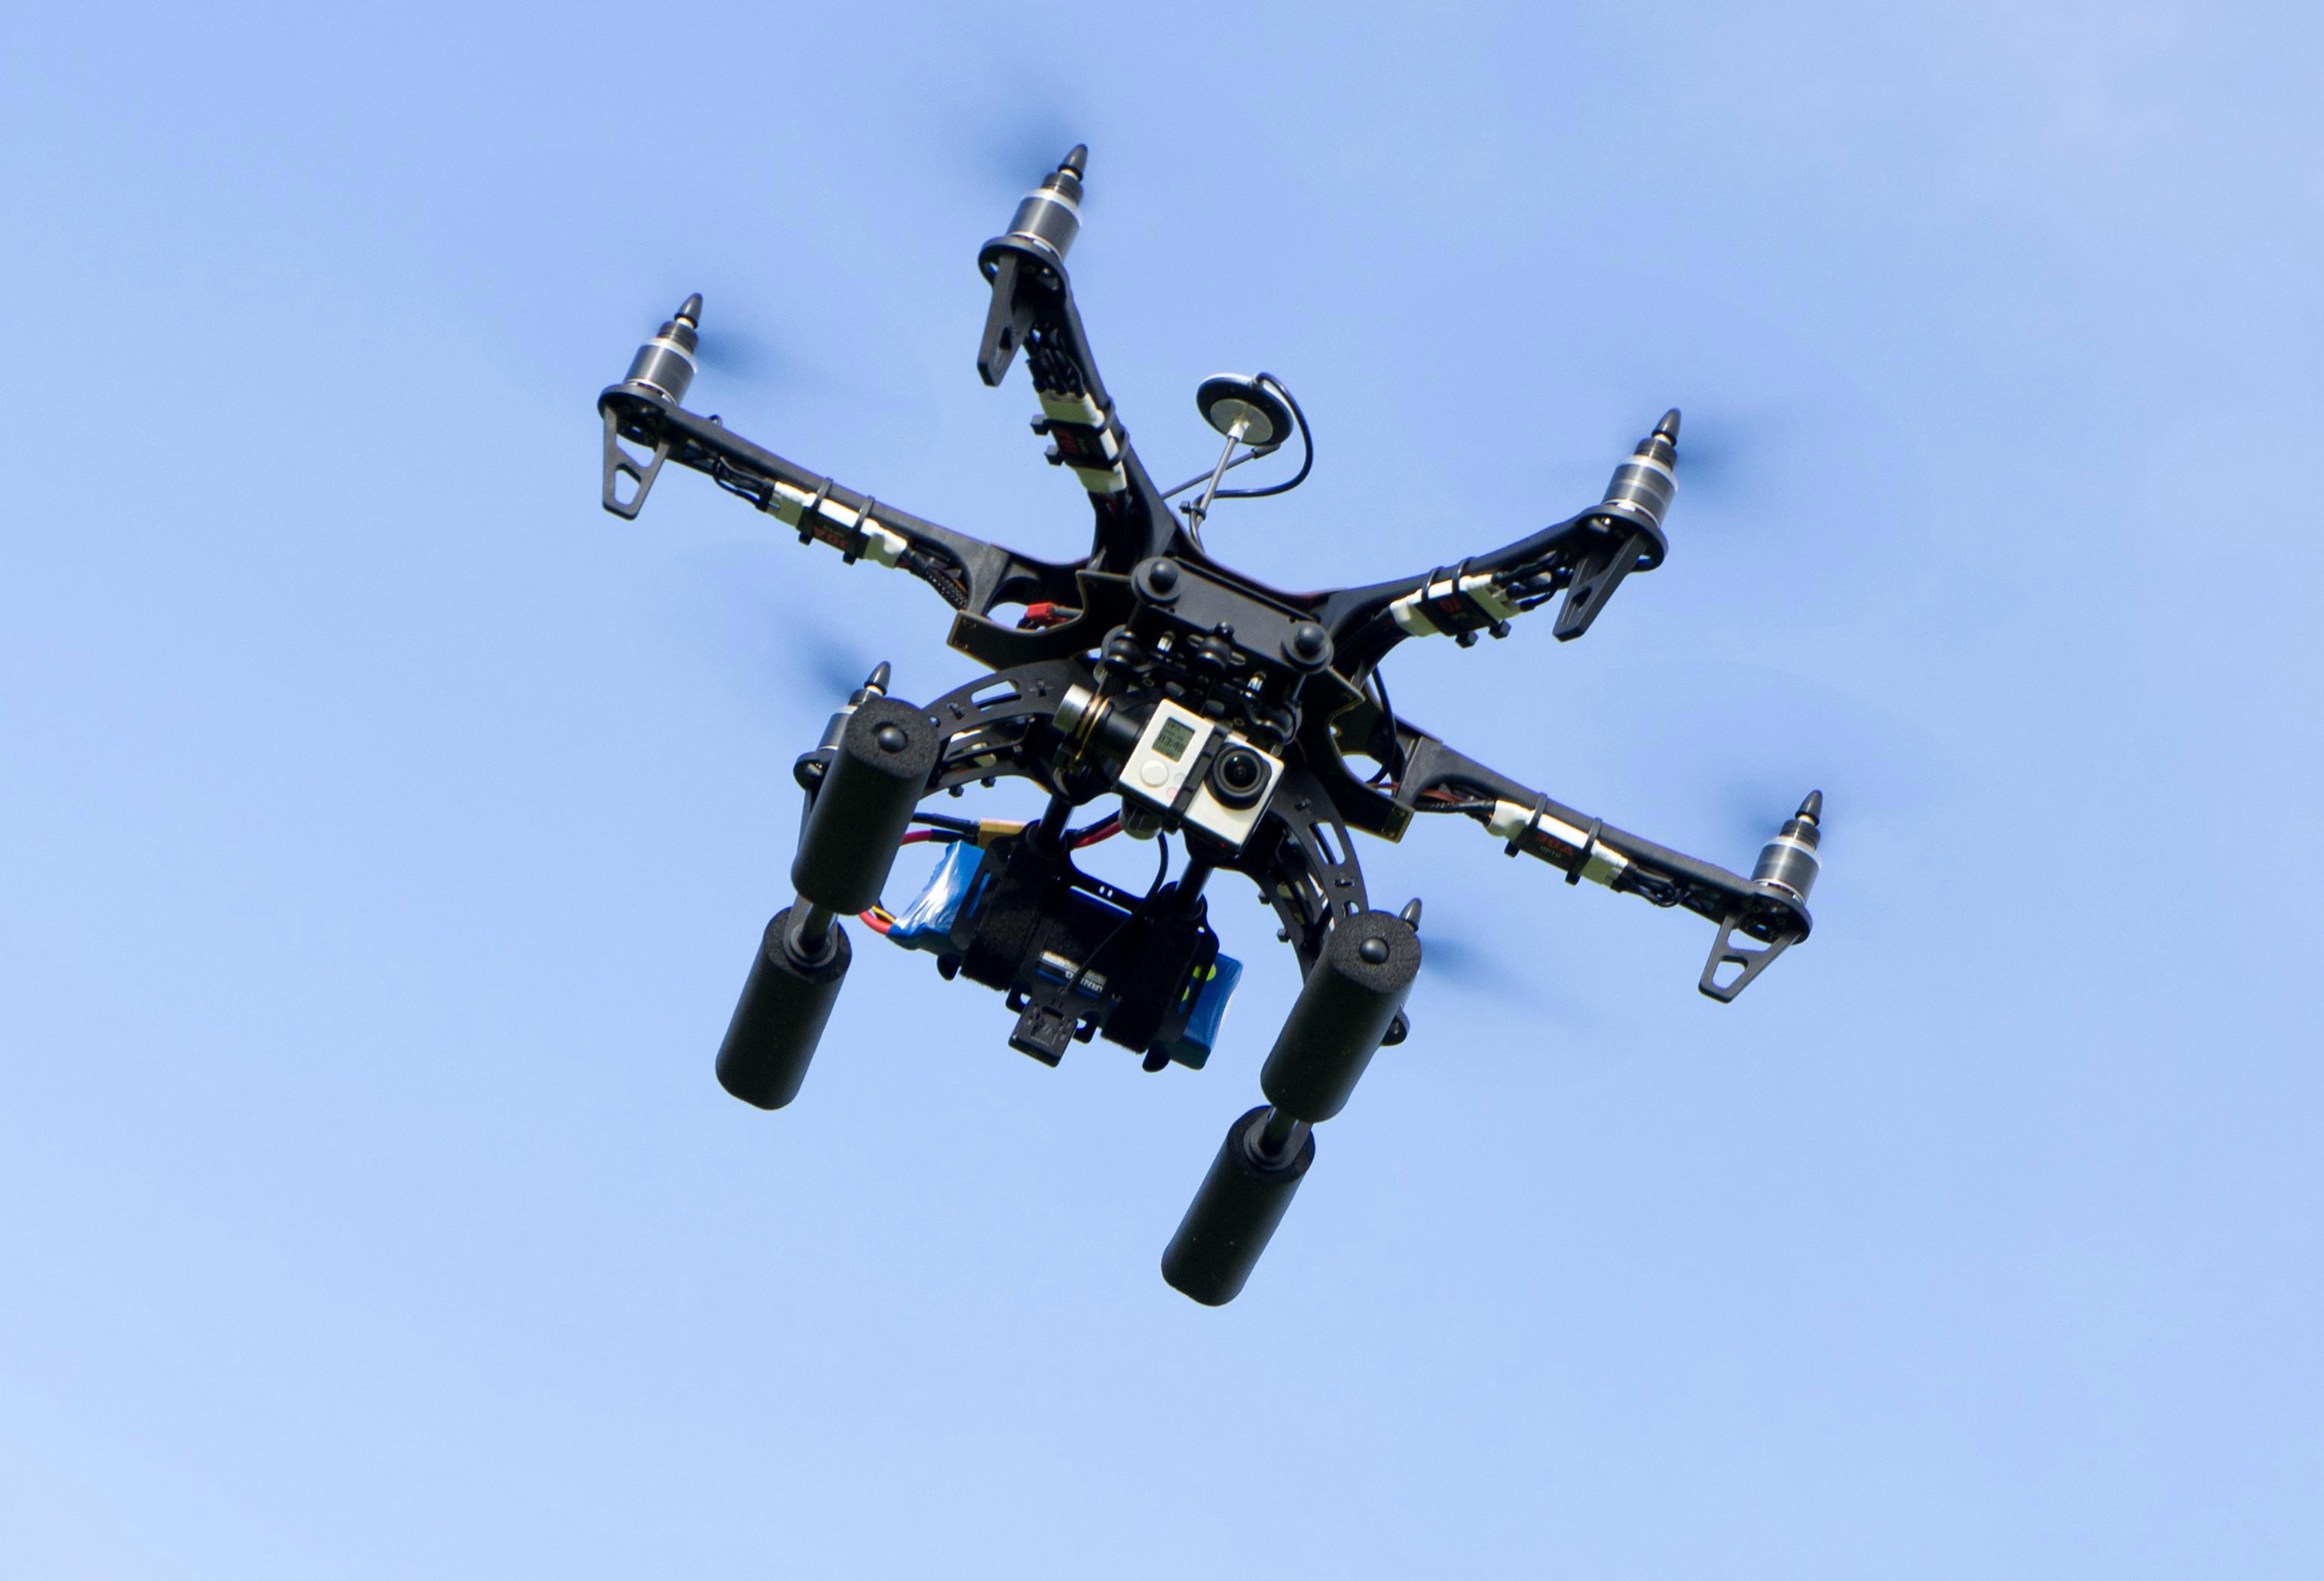  MedExpress berencana menggunakan drone untuk mengirim Viagra dan pil kontrasepsi darurat